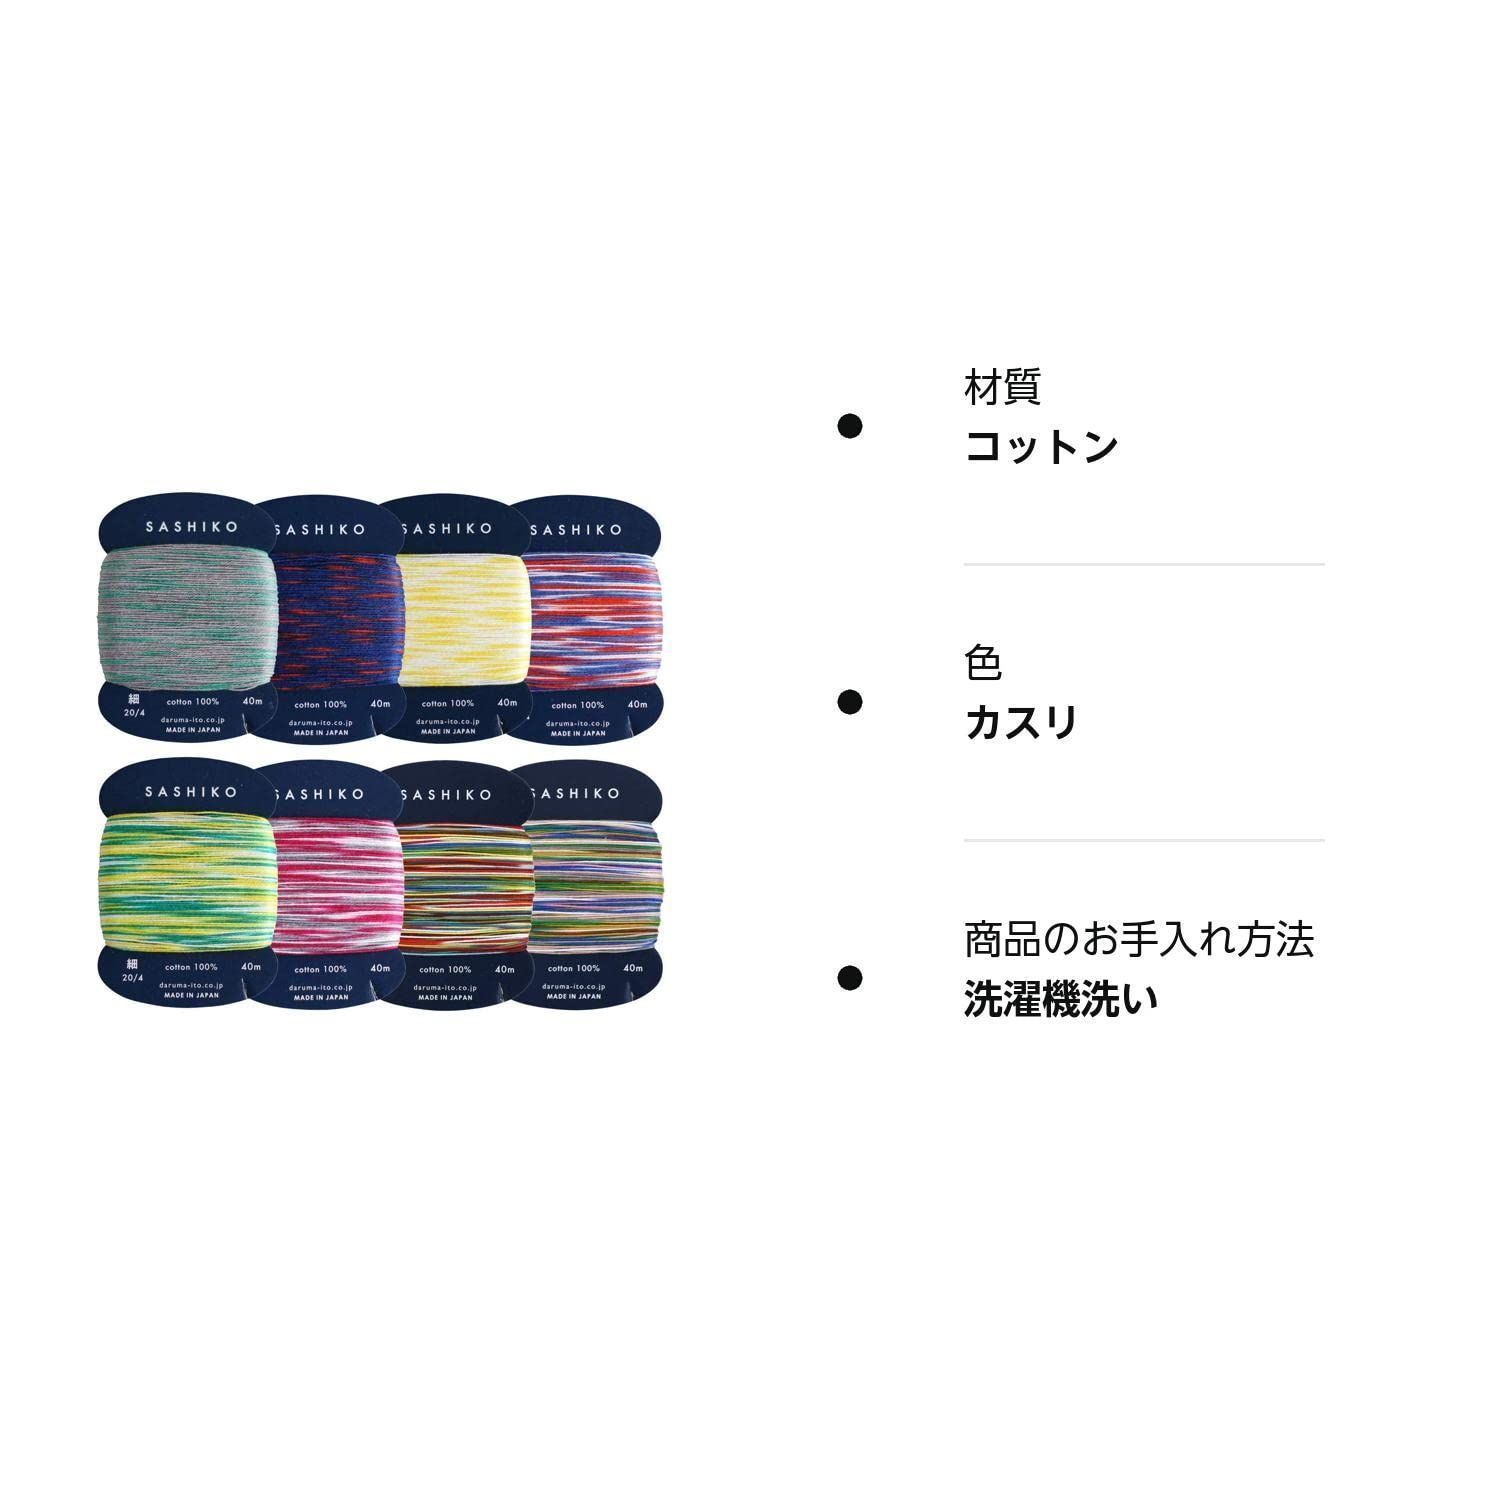 人気商品】ダルマ 刺し子糸 綿100% カードタイプ (40m)×カスリ8種